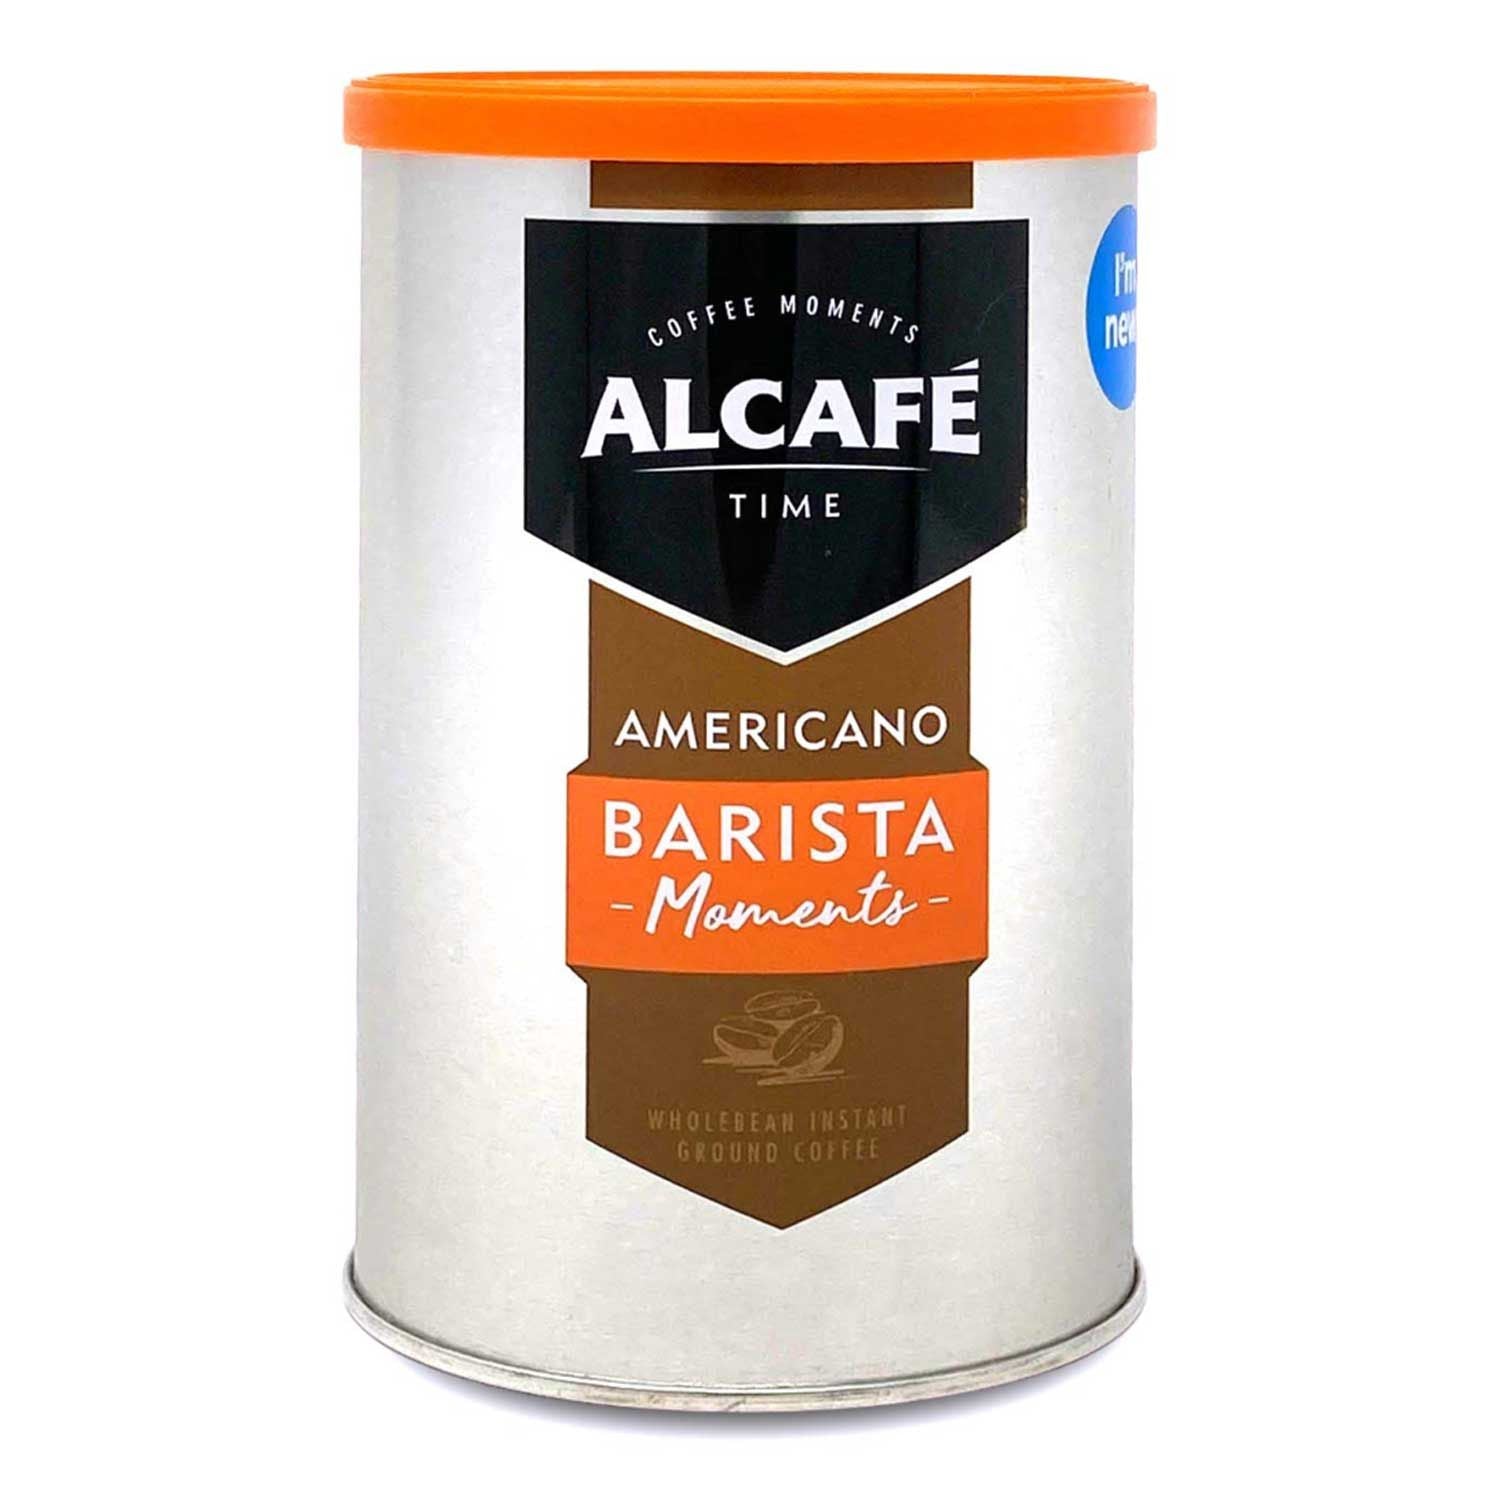 Alcafé Americano Barista Moments 100g